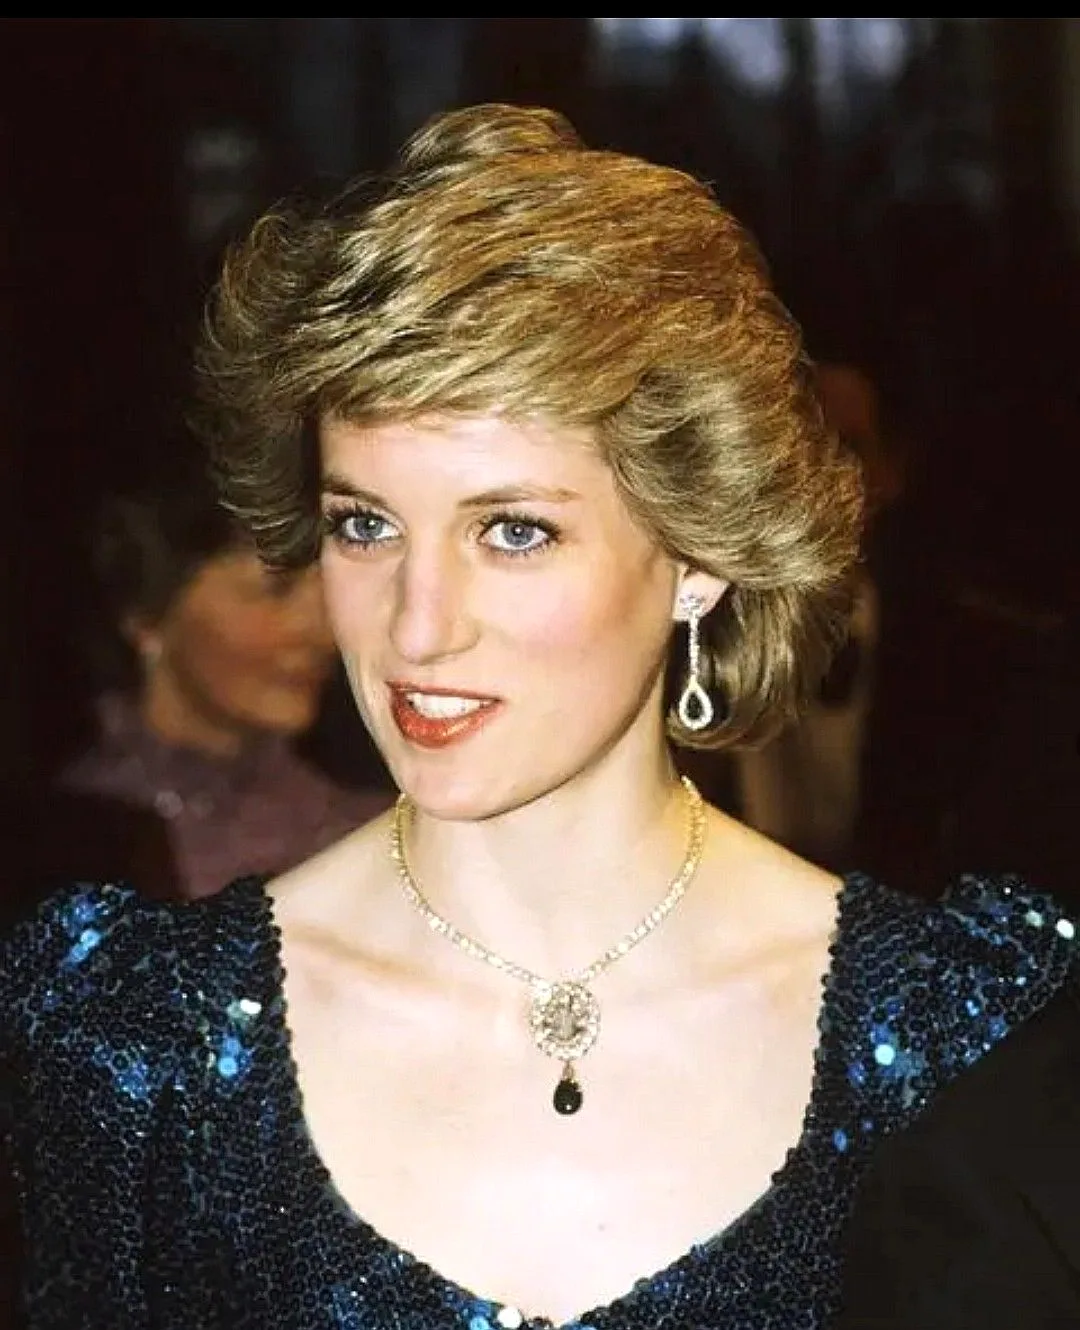 Diana, Princess of Wales (1961-1997)